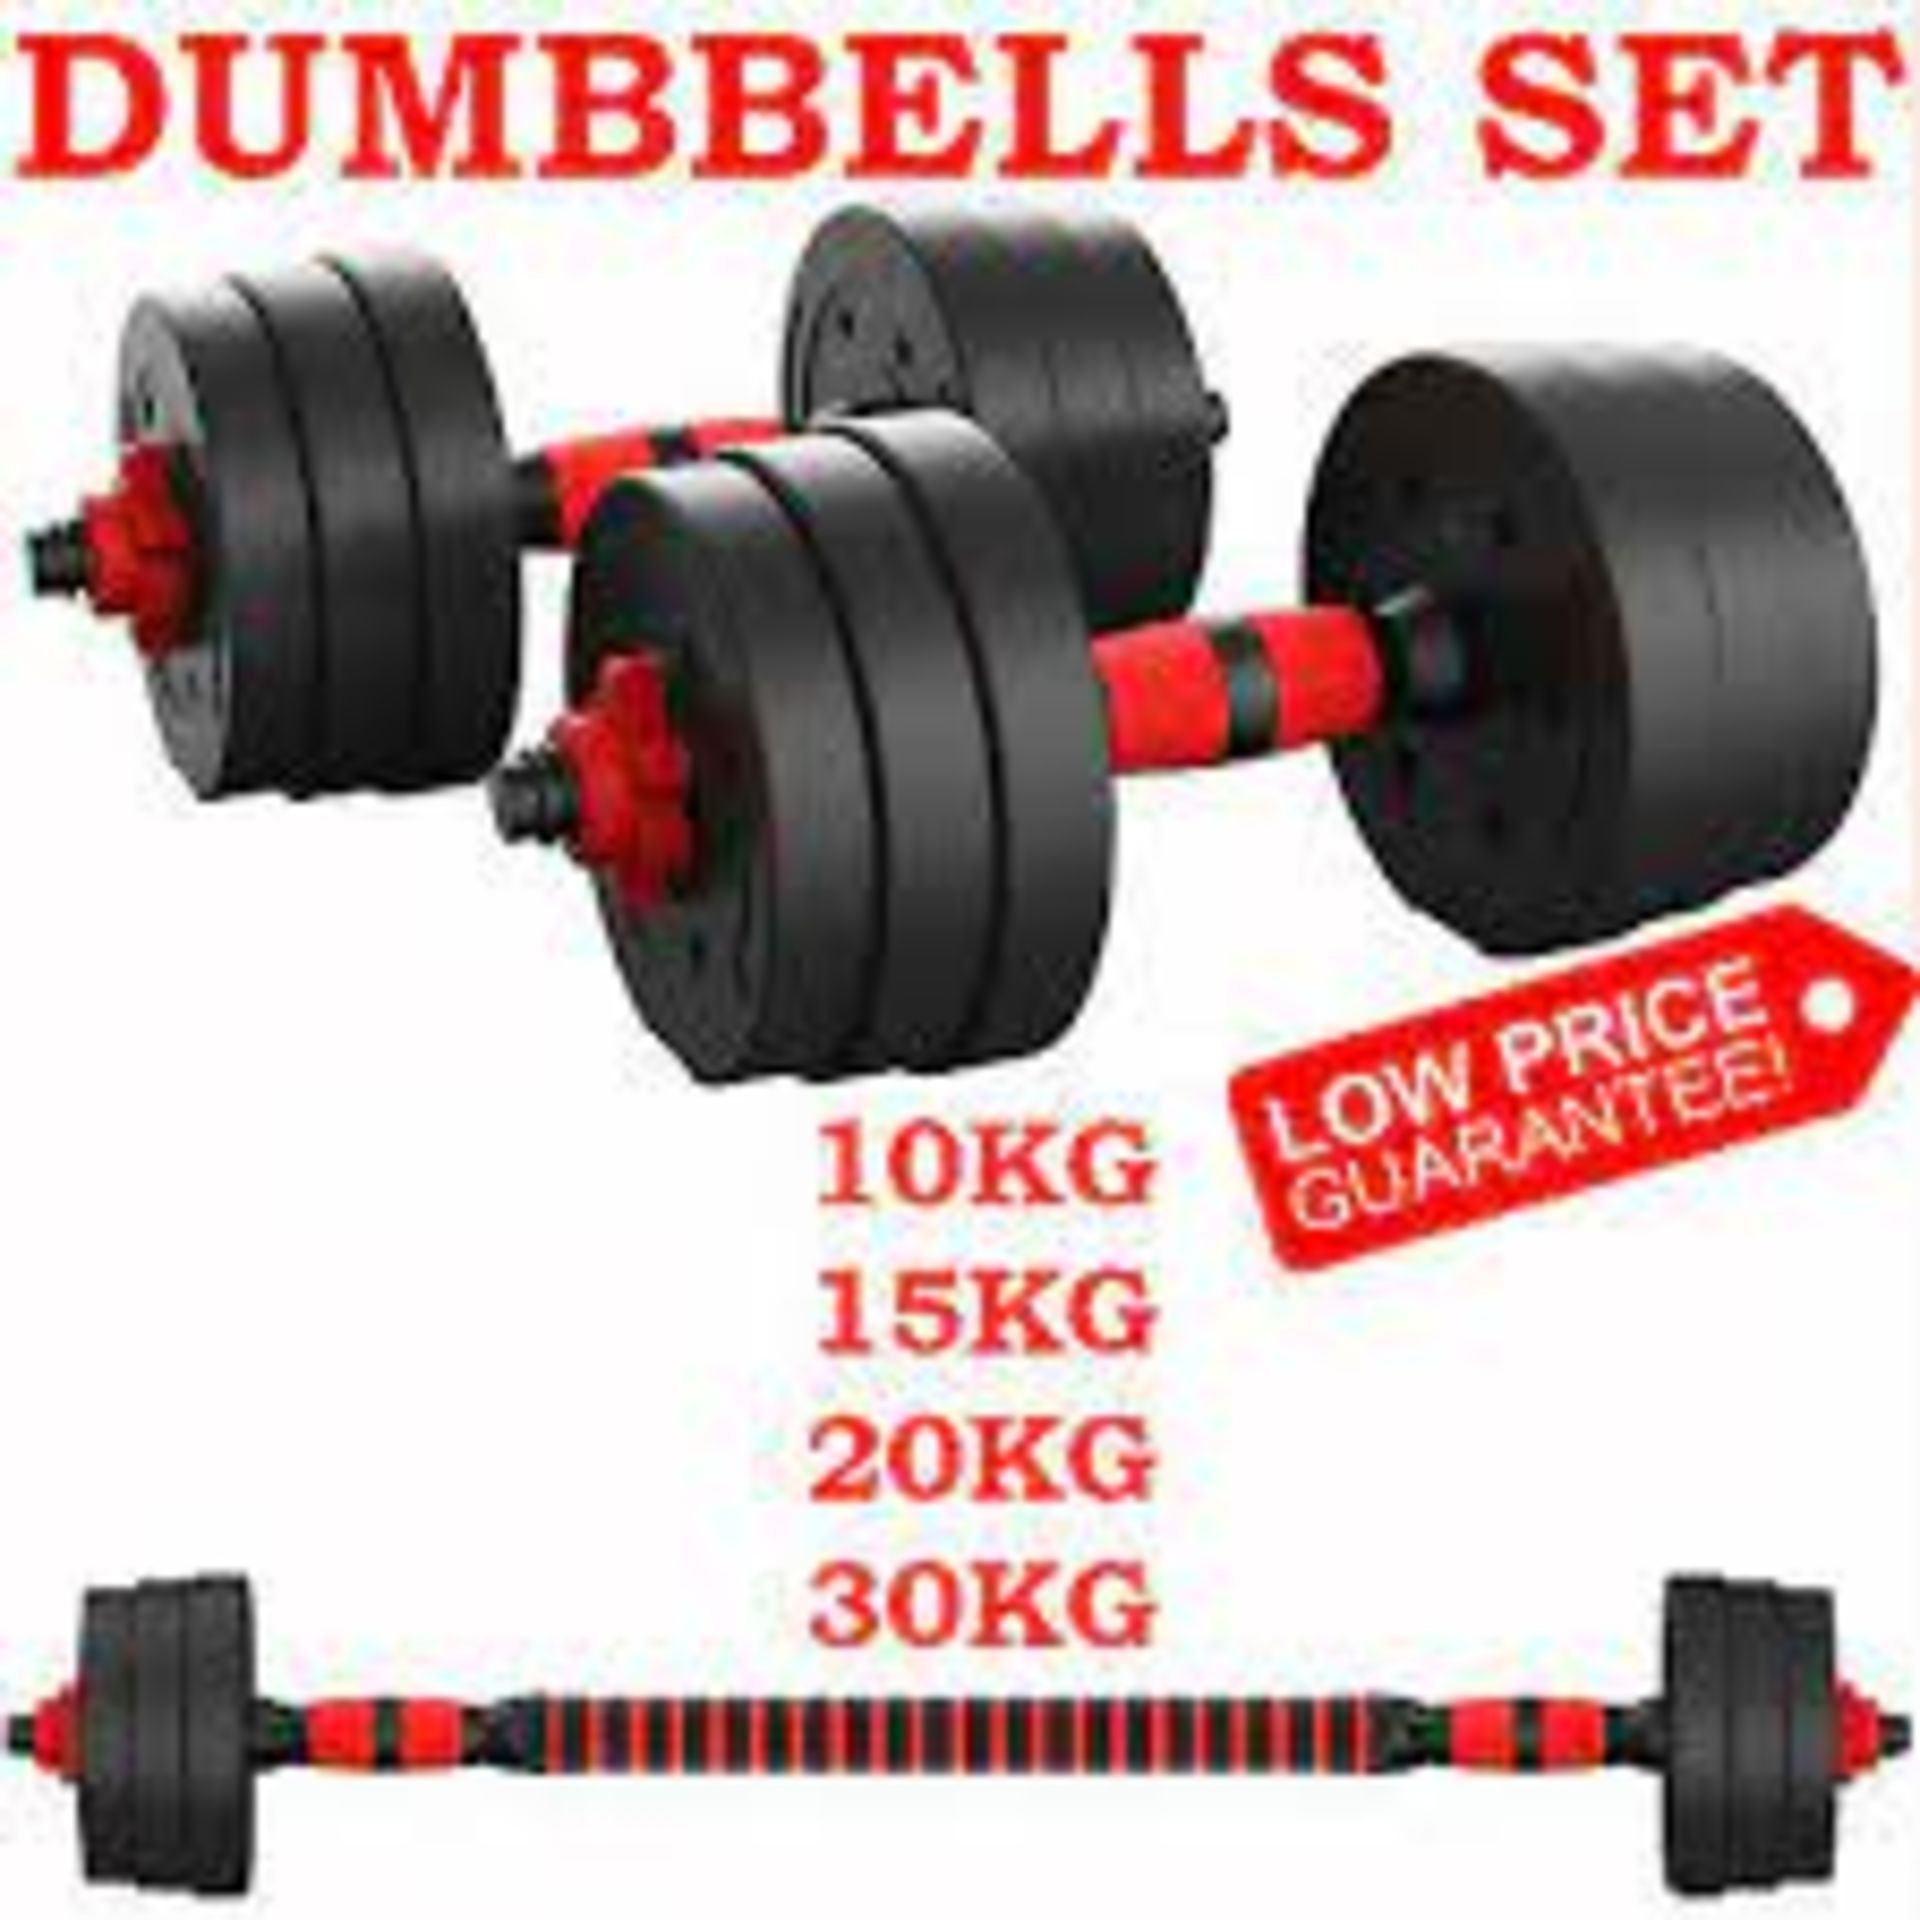 20kg Dumbell/Barbell Fitness Set